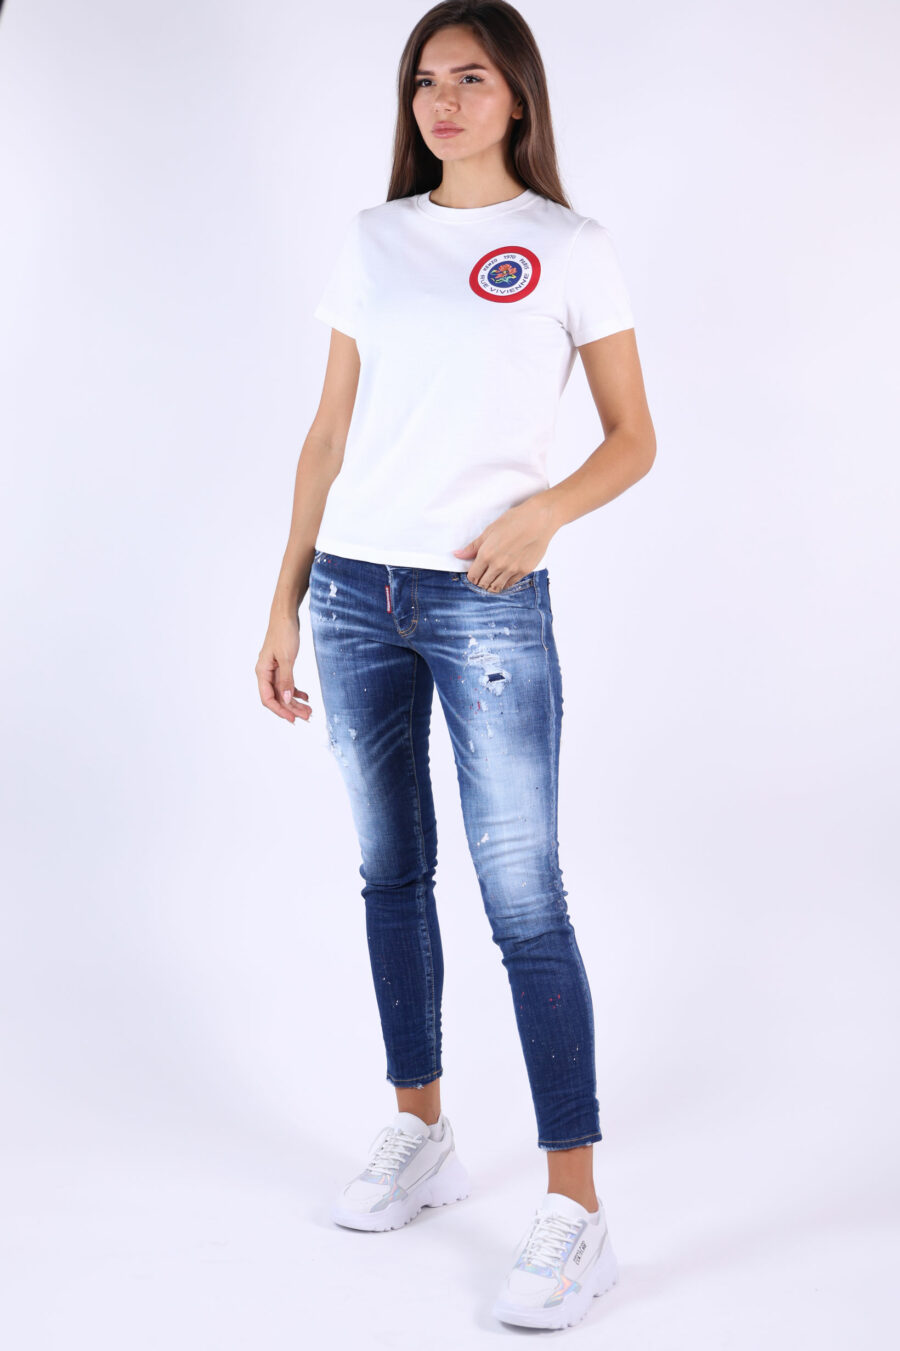 Weißes T-Shirt mit rundem Mini-Logo und Grafik auf dem Rücken - 361223054662201915